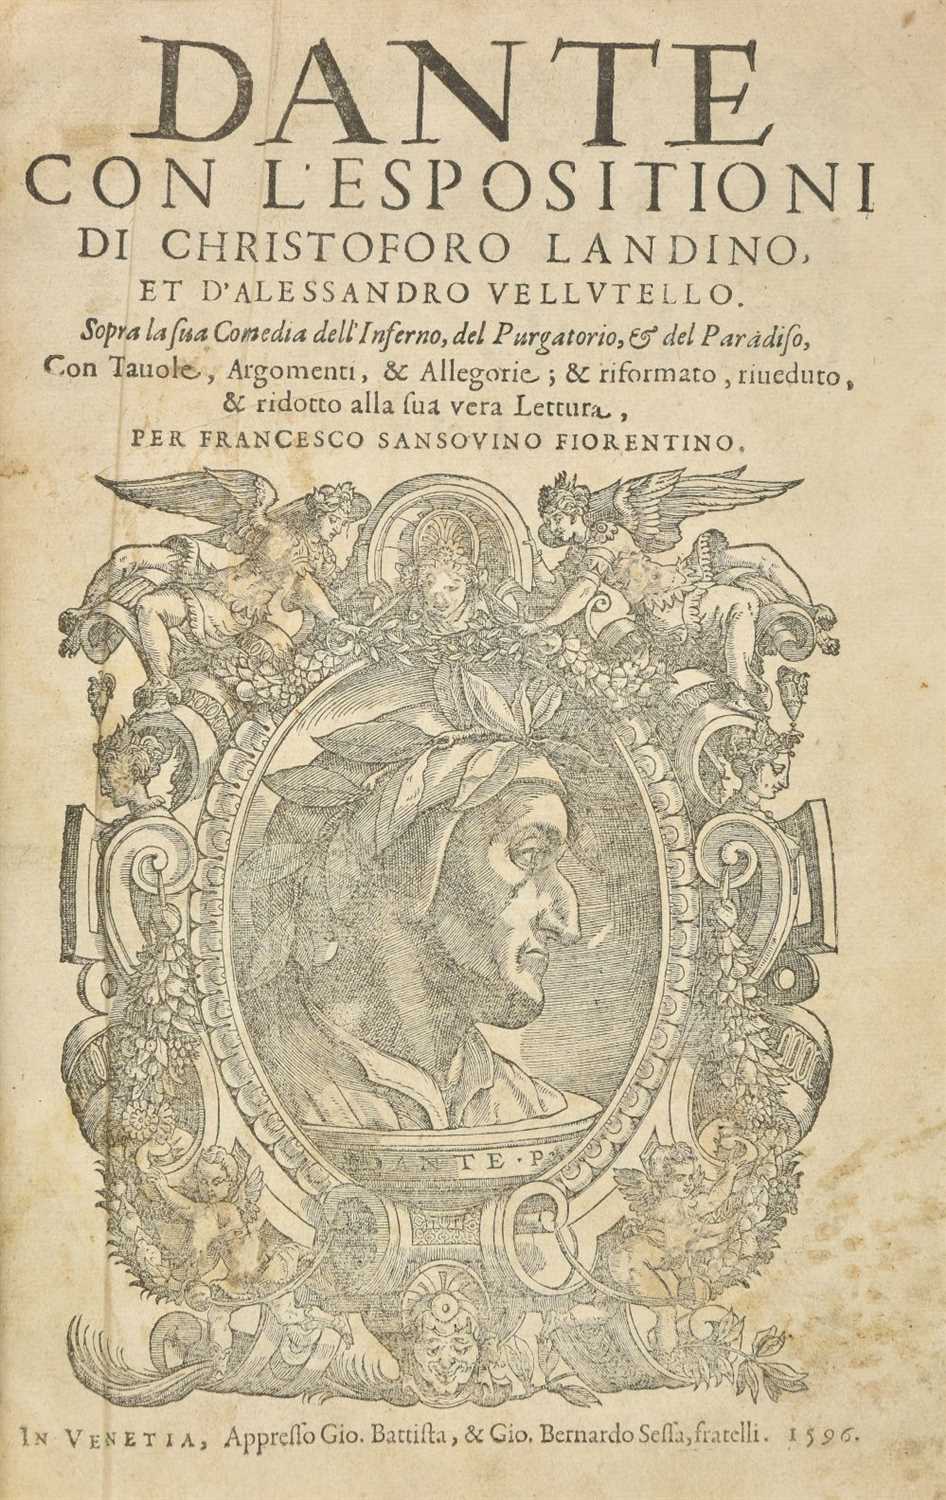 Lot 338 - Dante (Alighieri). Dante con L'Espositioni di Christoforo Landino..., Venice, 1596